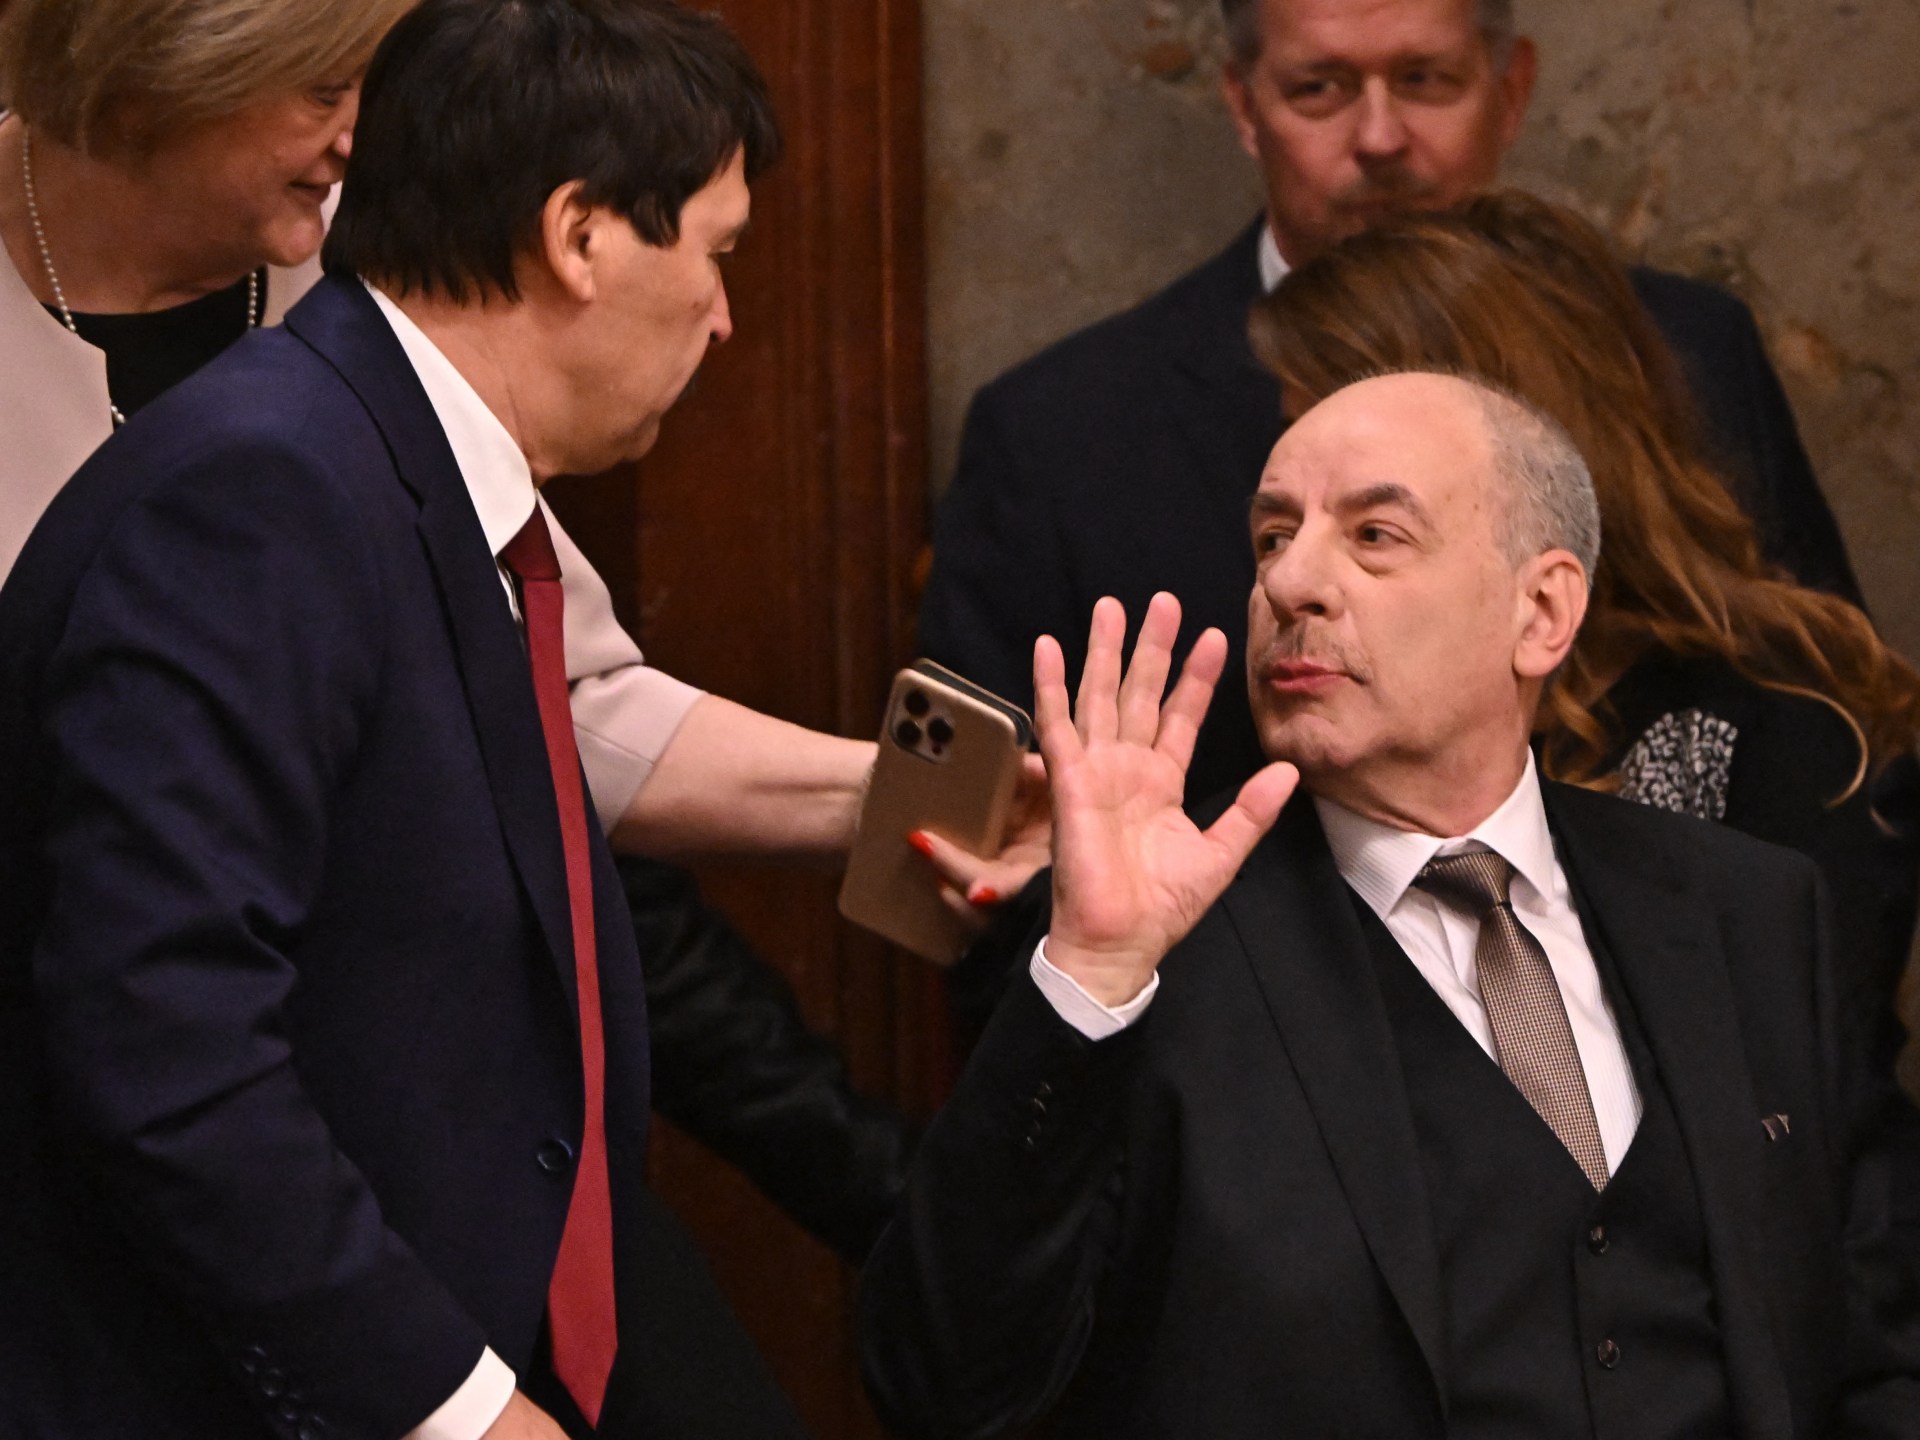 Le parlement hongrois élit un nouveau président à la suite d’un scandale |  Actualités politiques